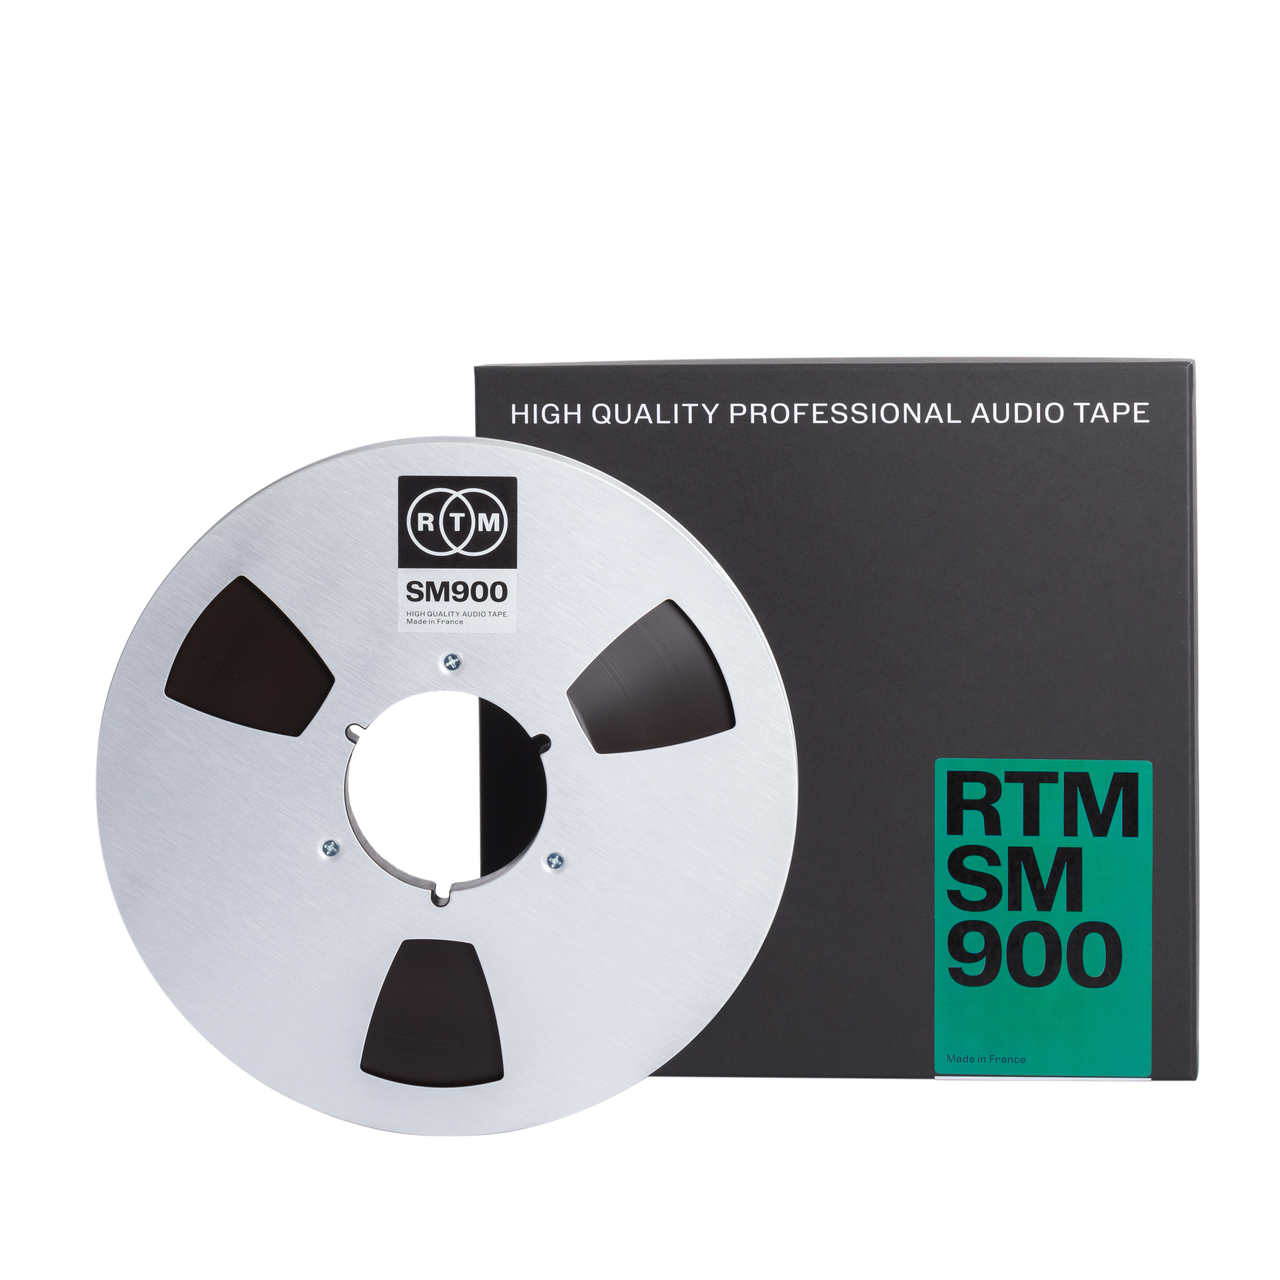 RTM SM900 1/2 premium high output studio magnetic audio recording tape